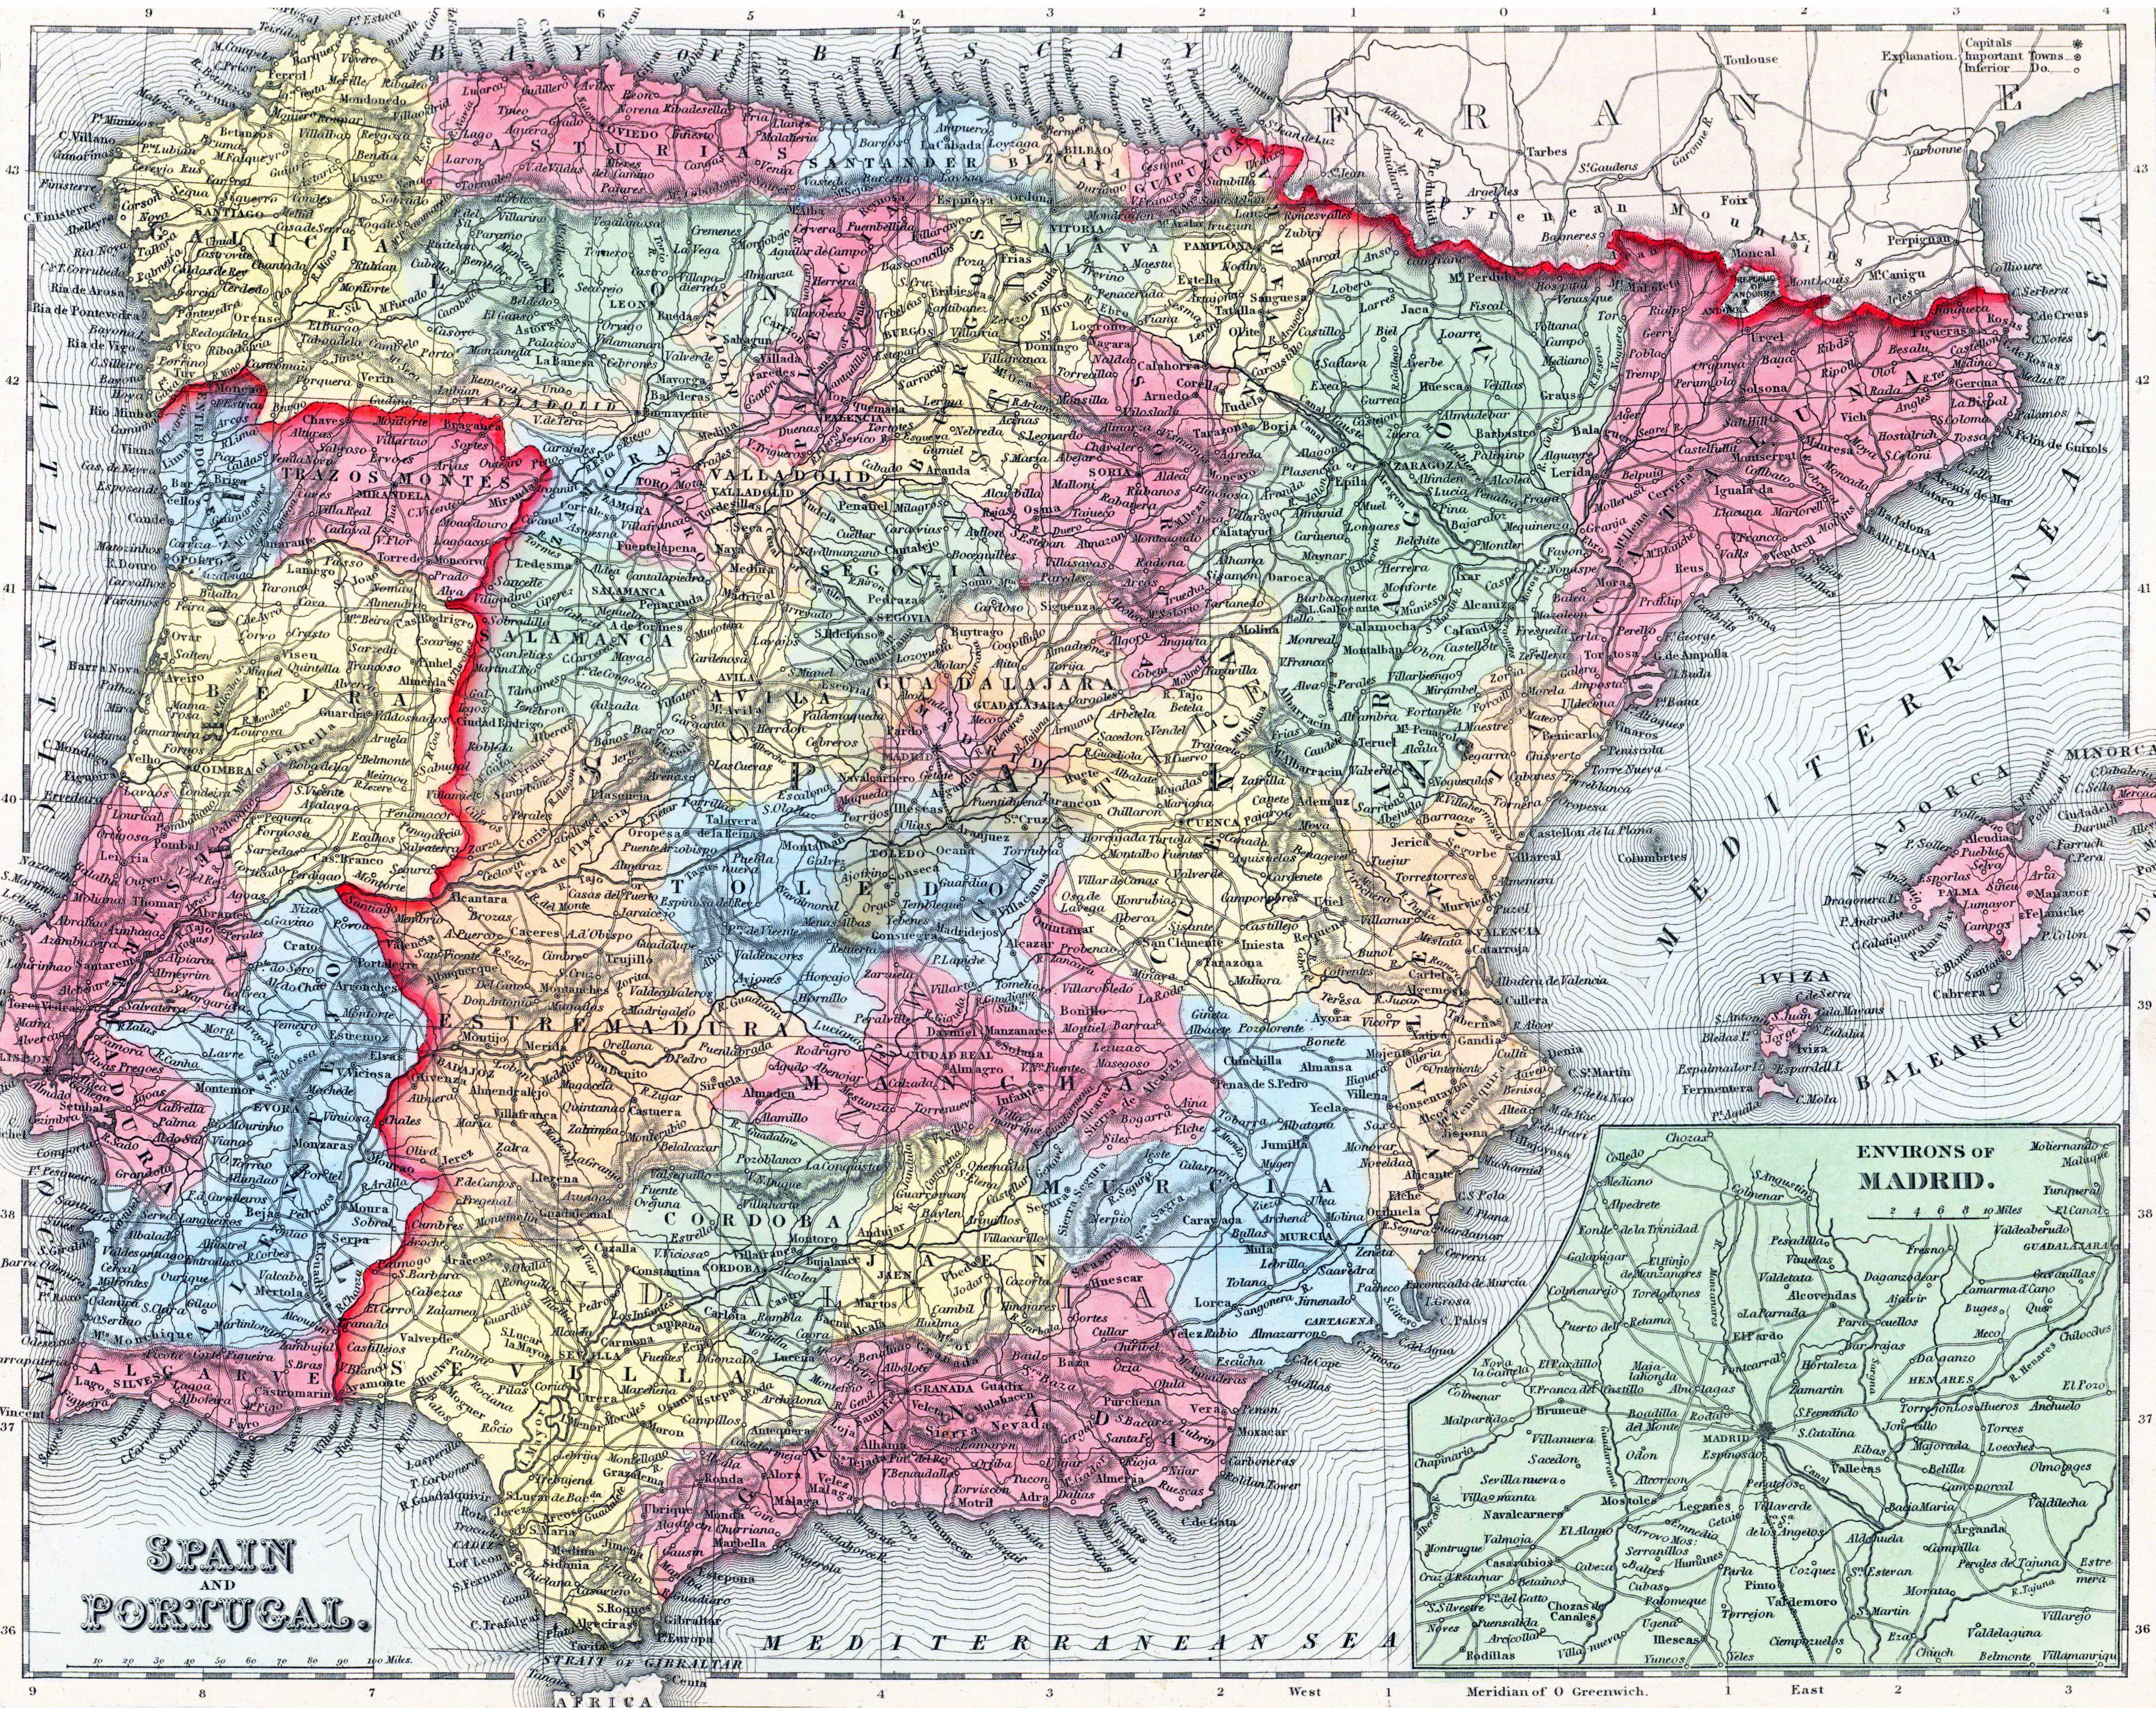 mapa carreteras y turístico españa y portugal - Comprar Mapas  contemporâneos no todocoleccion